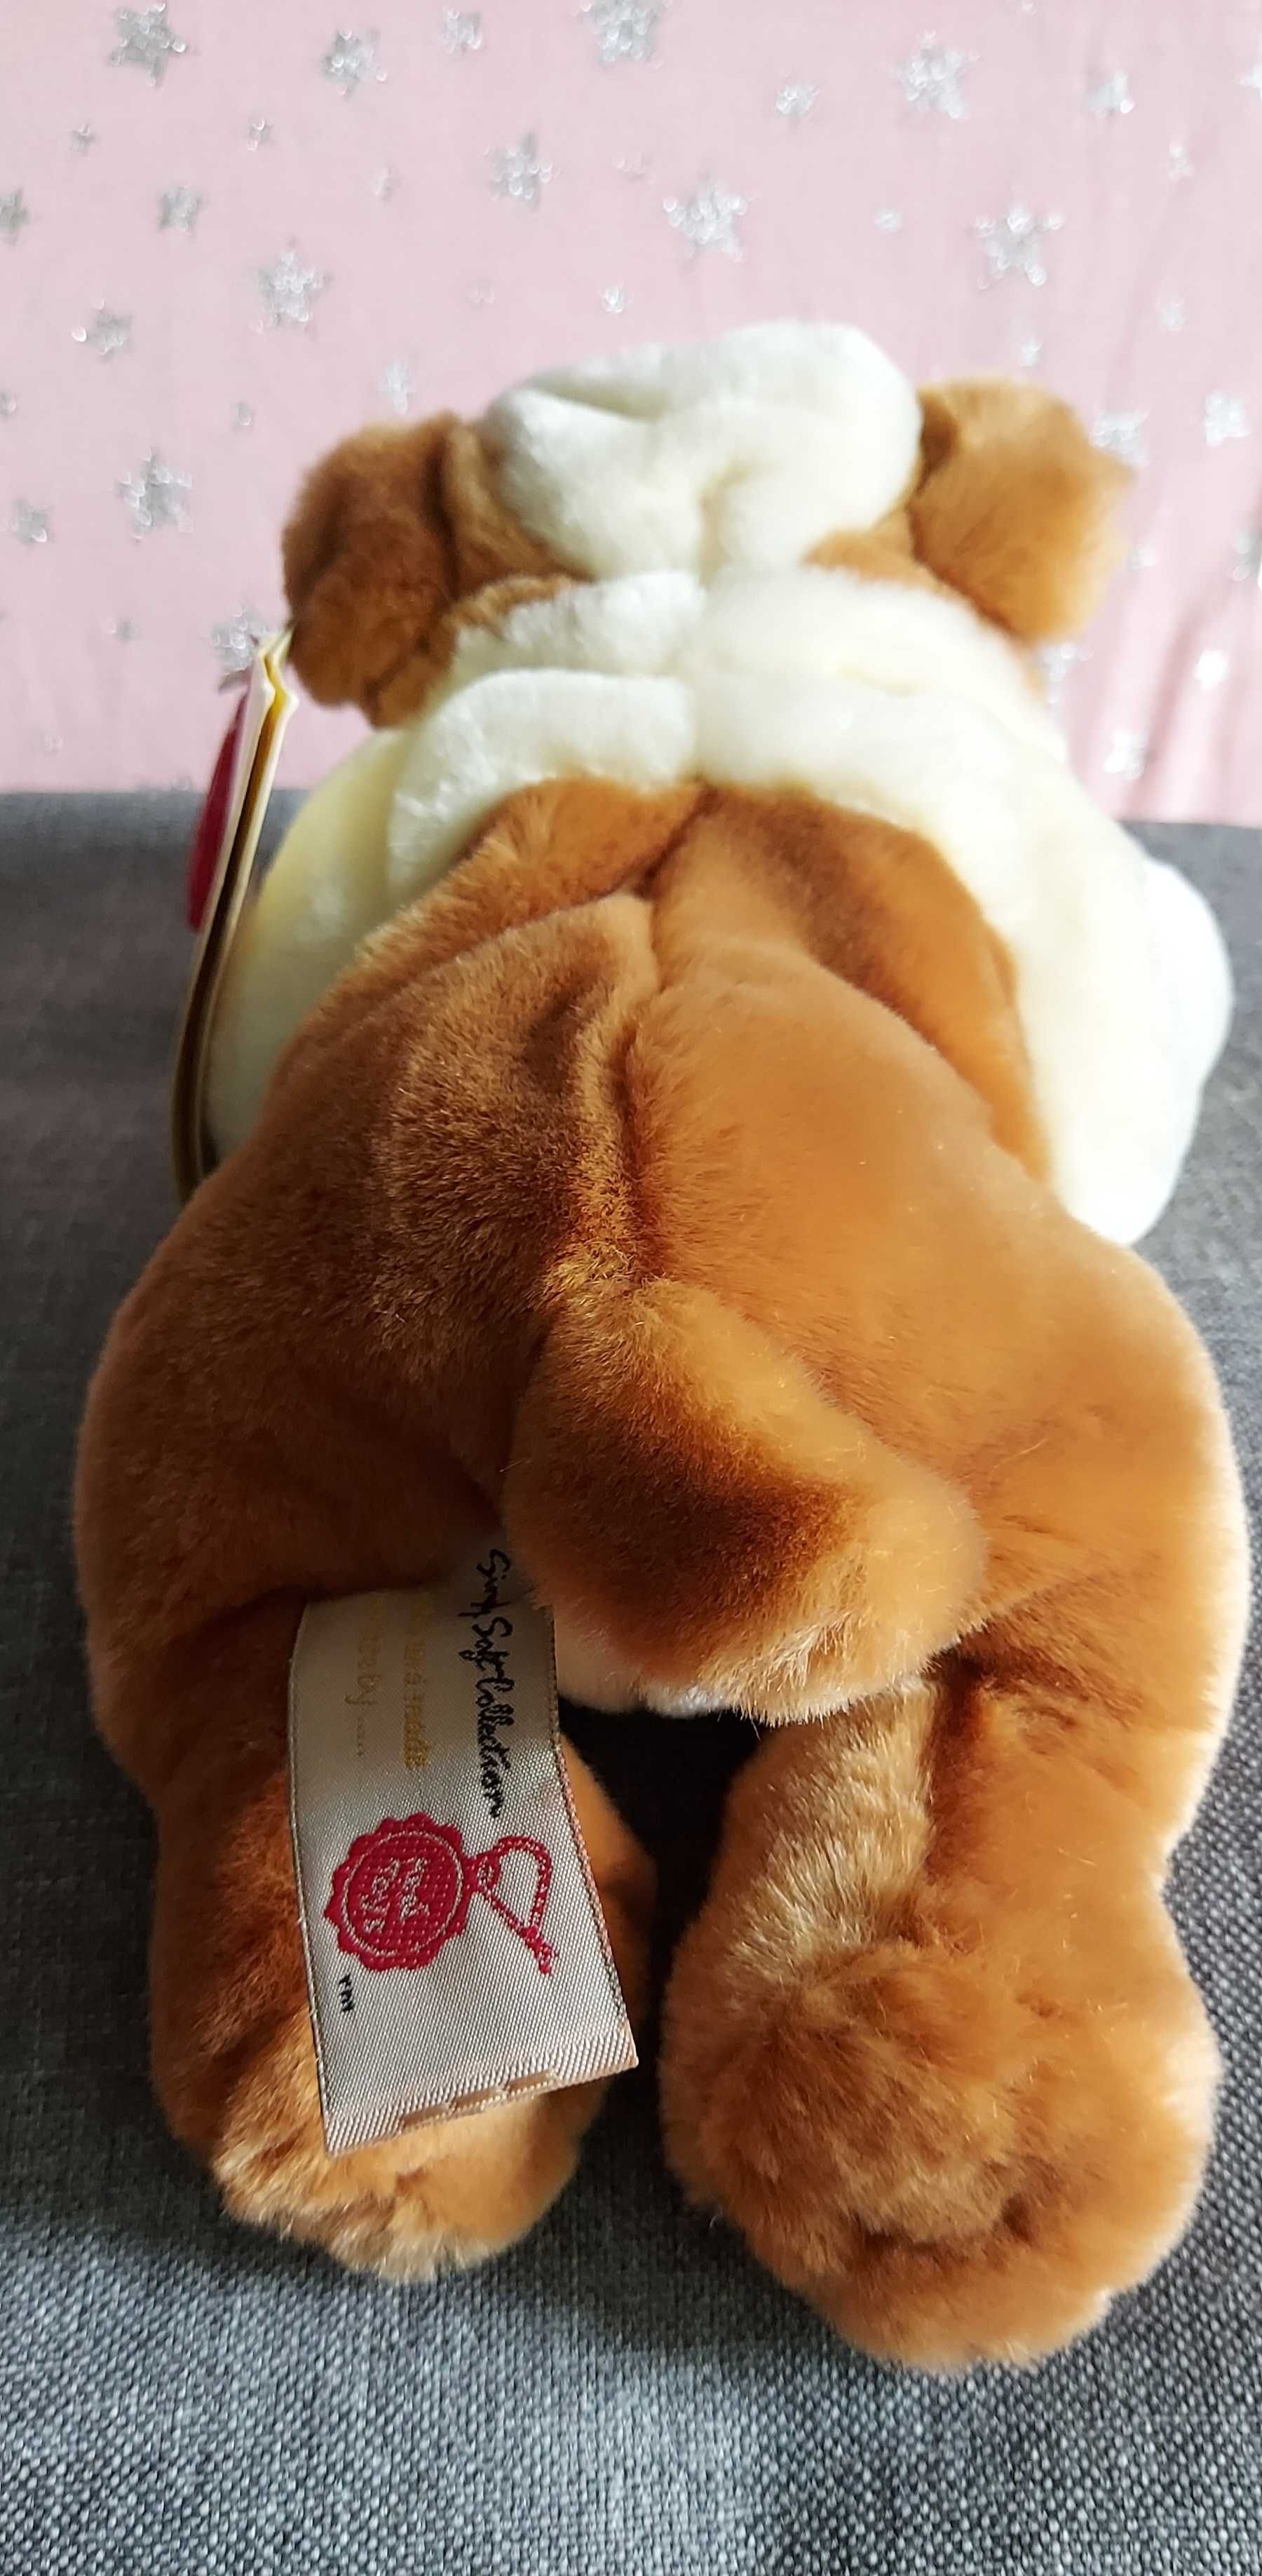 Кокер - спанієль бульдог англійський собака М'яка іграшка игрушка